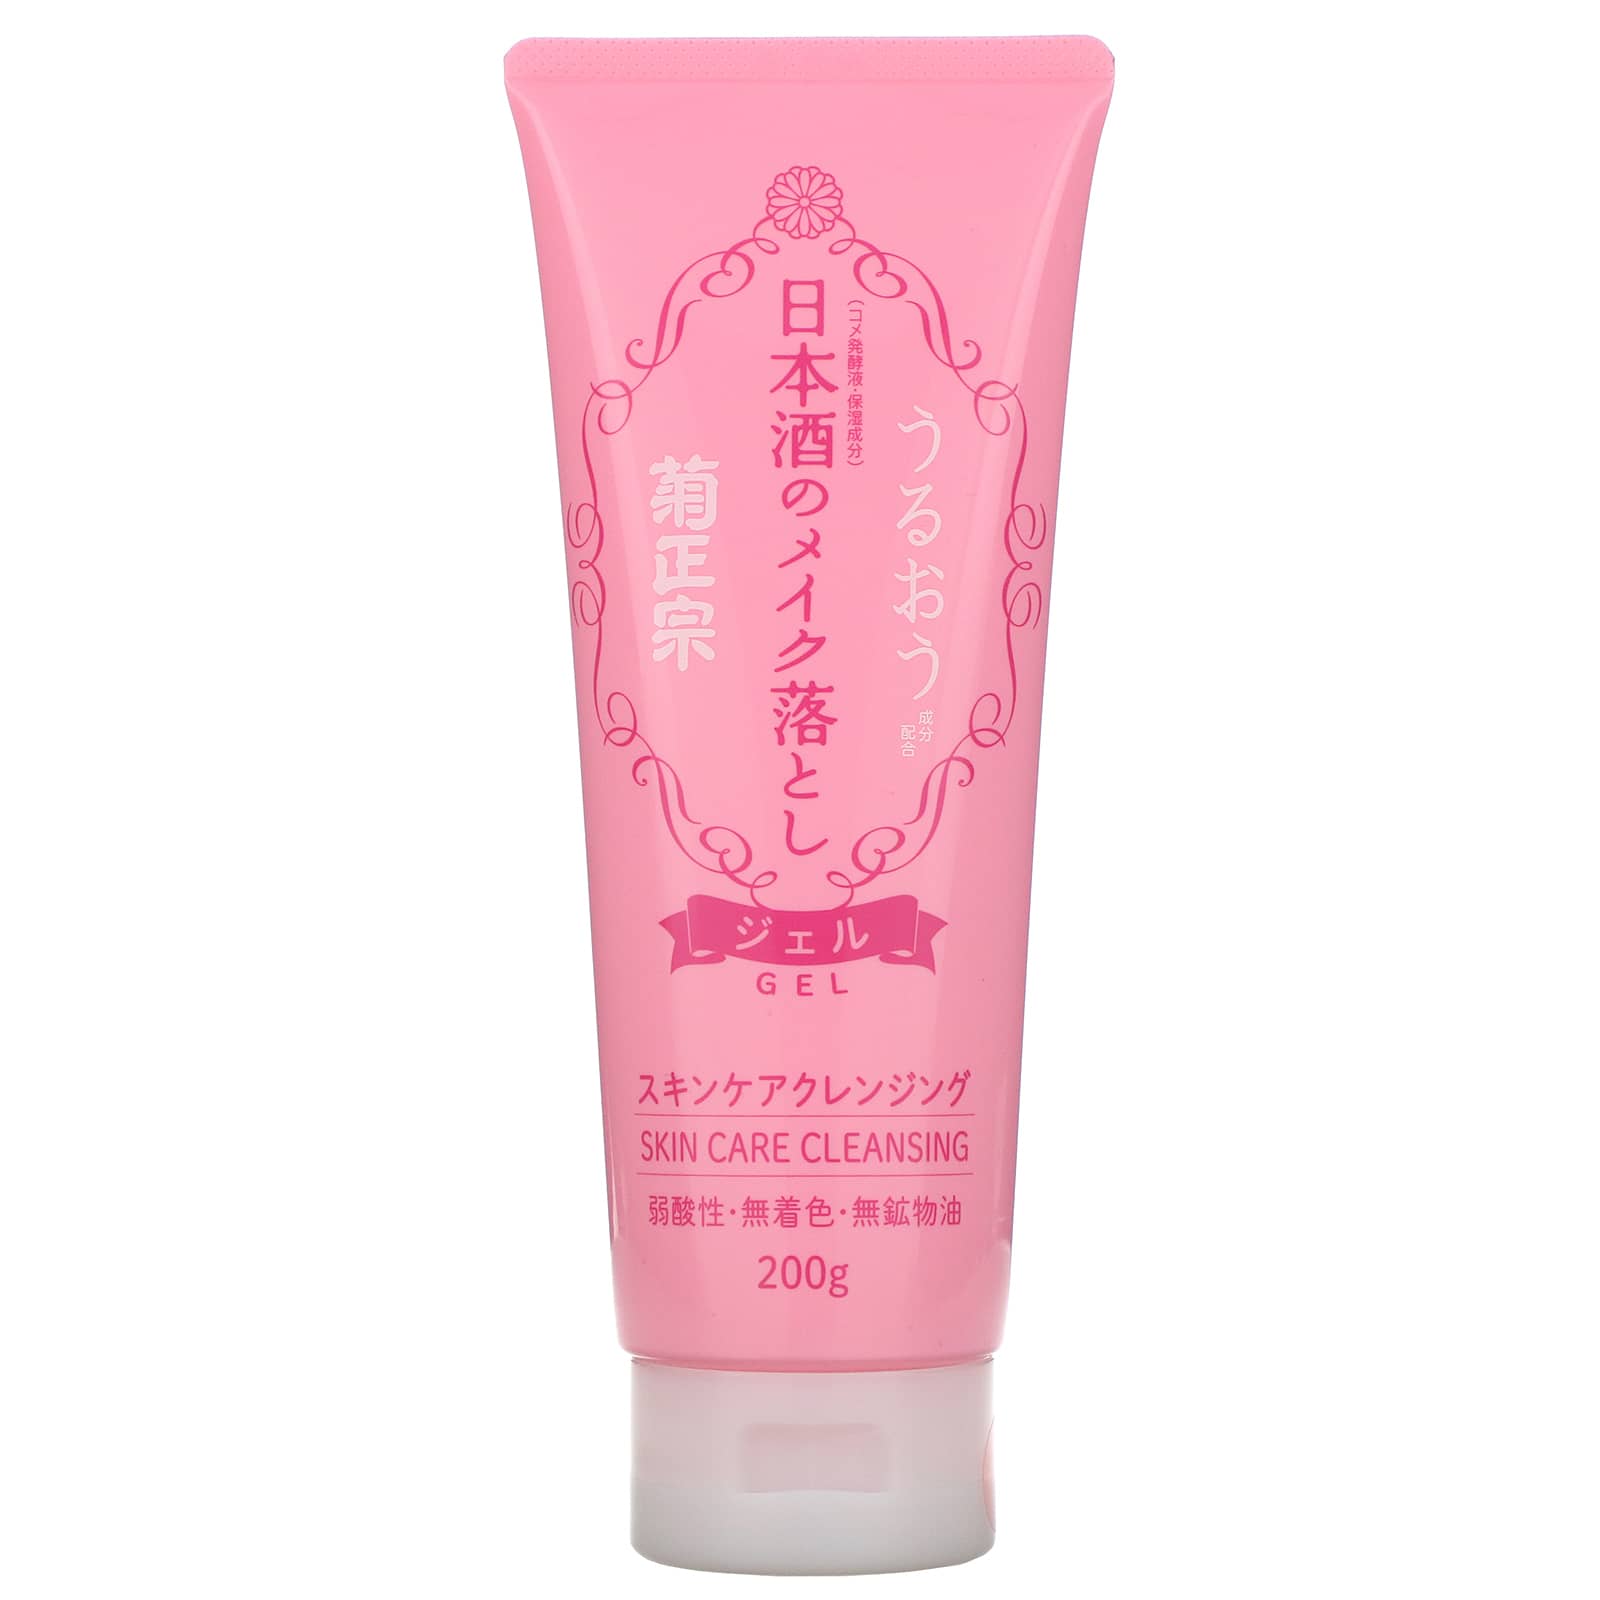 Kikumasamune, Sake Skin Care Cleansing (200 g)